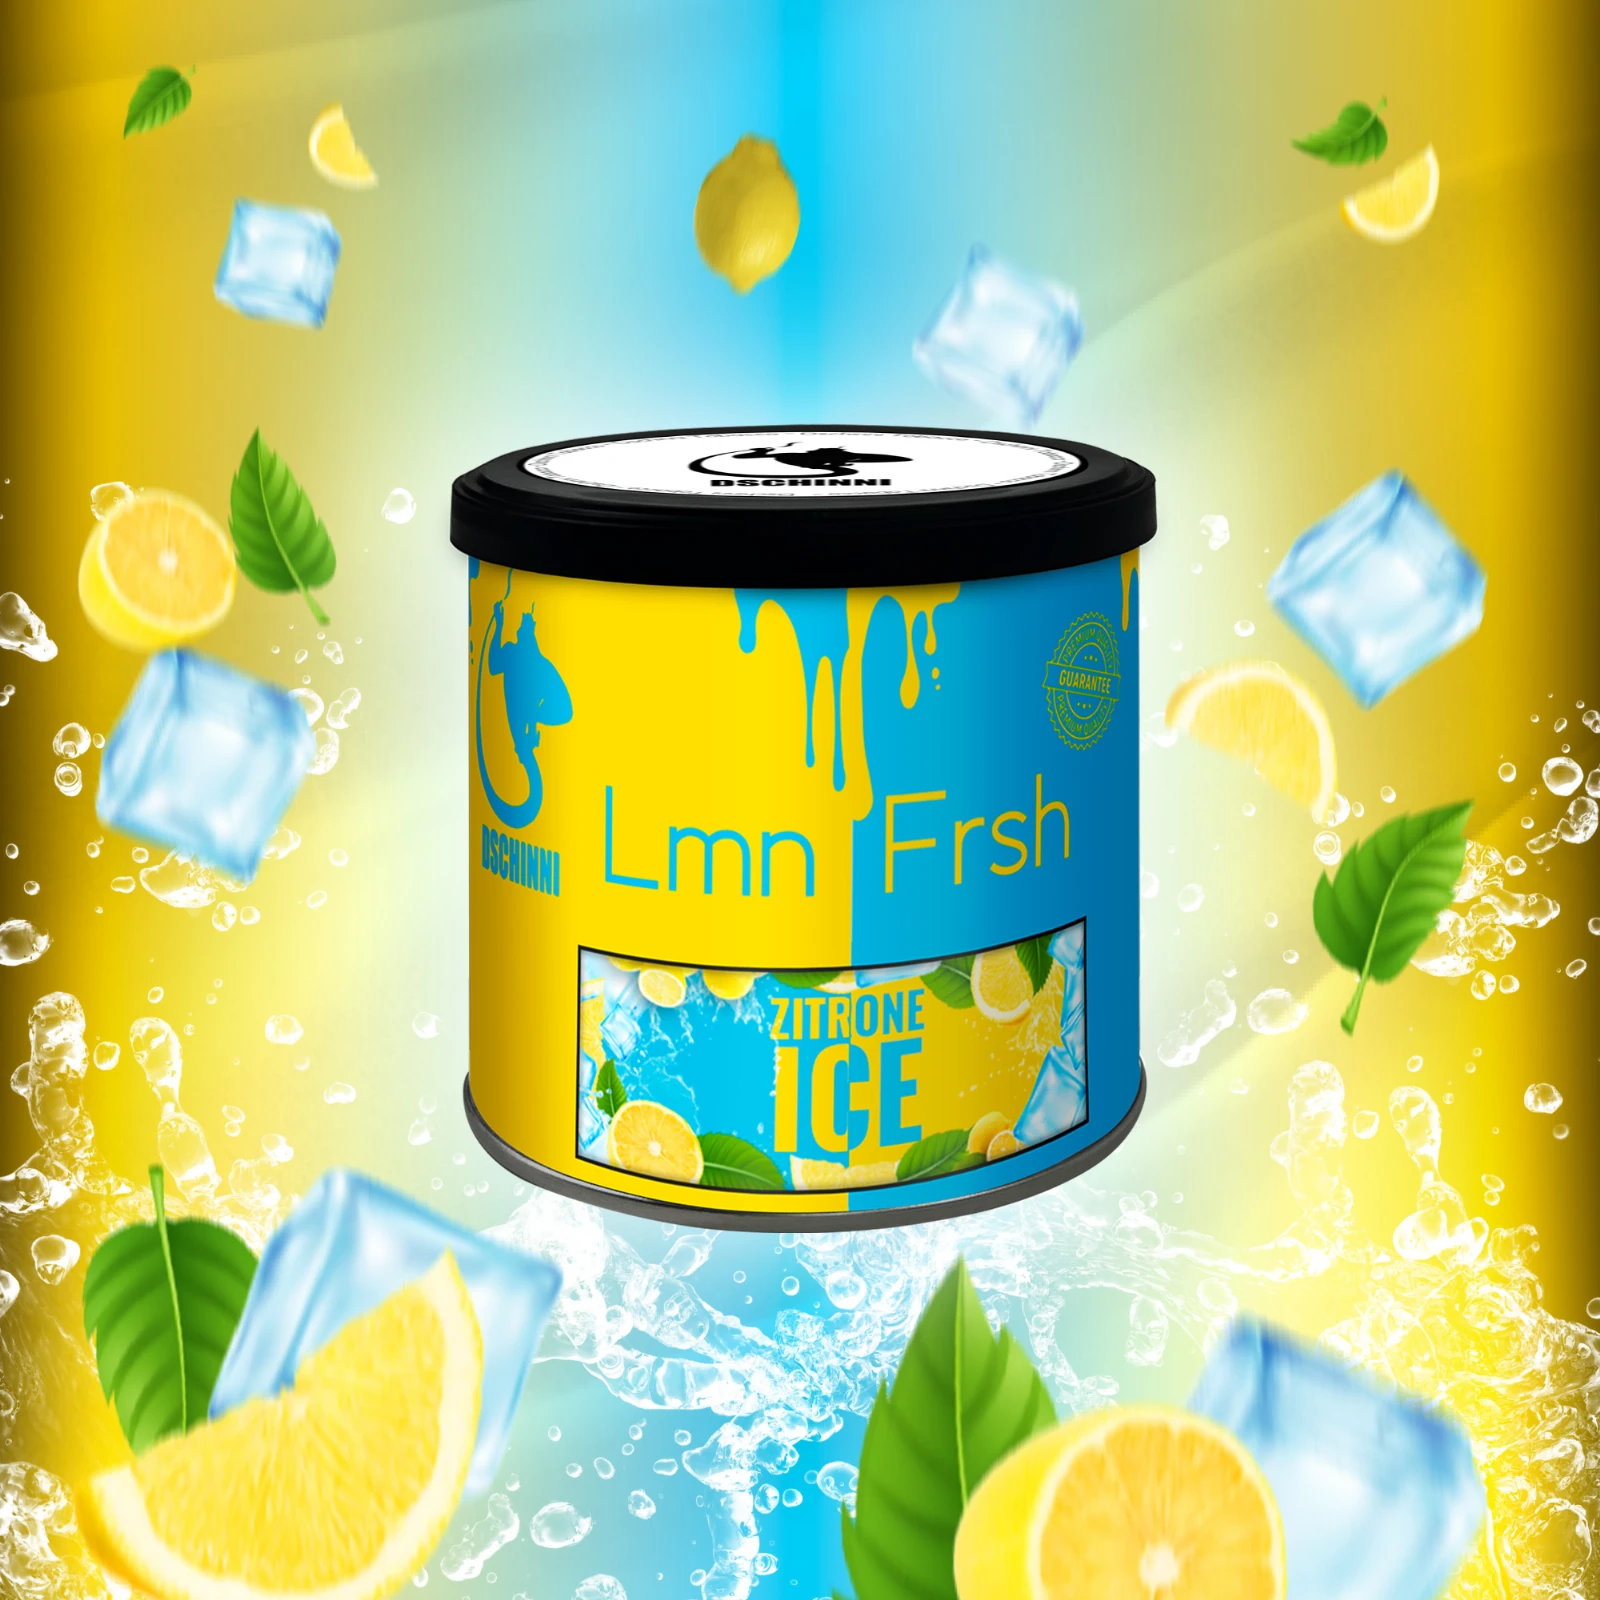 Dschinni - Pfeifentabak - Lemon Fresh - 65g | Shishas günstig kaufen1